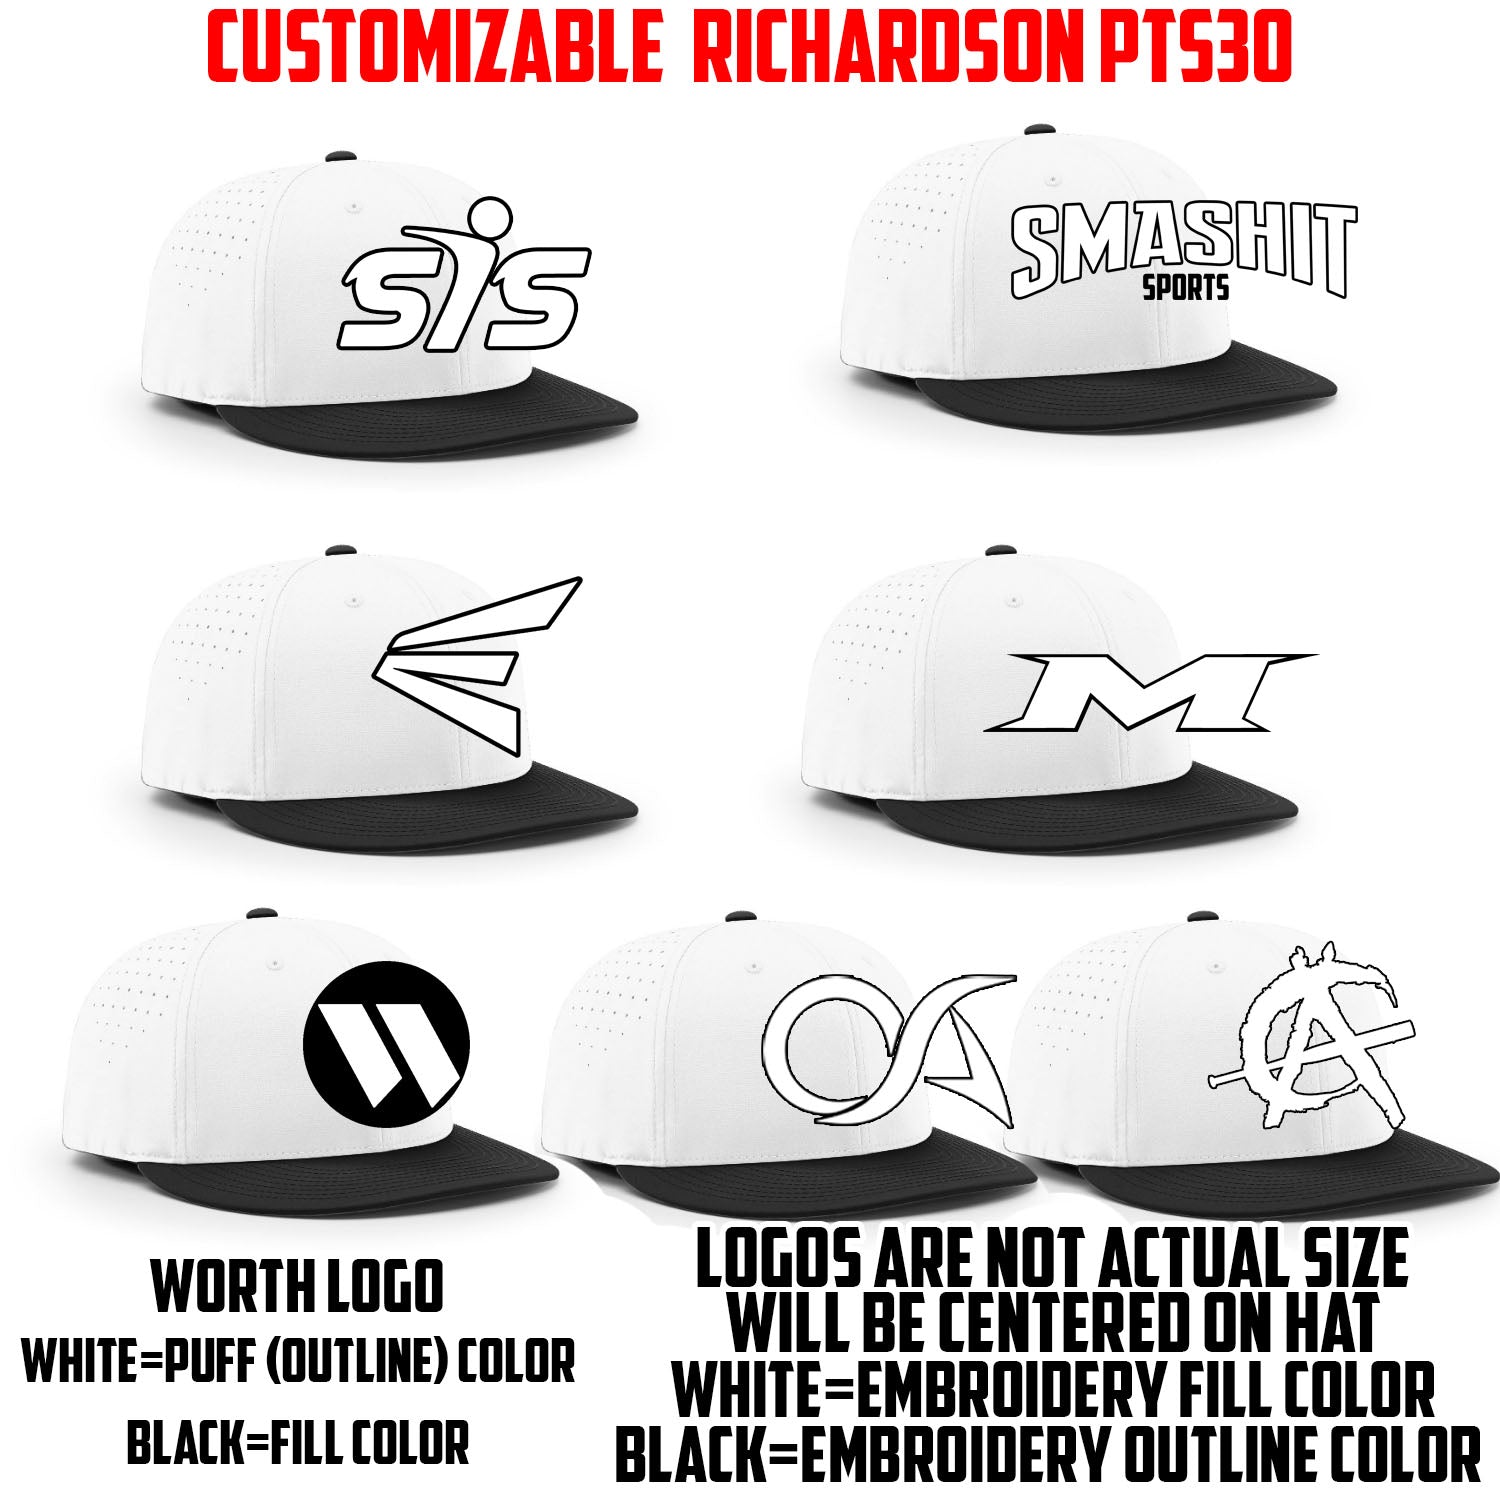 Customizable Logo Hat by Richardson (Black Brim/White Crown PTS30)